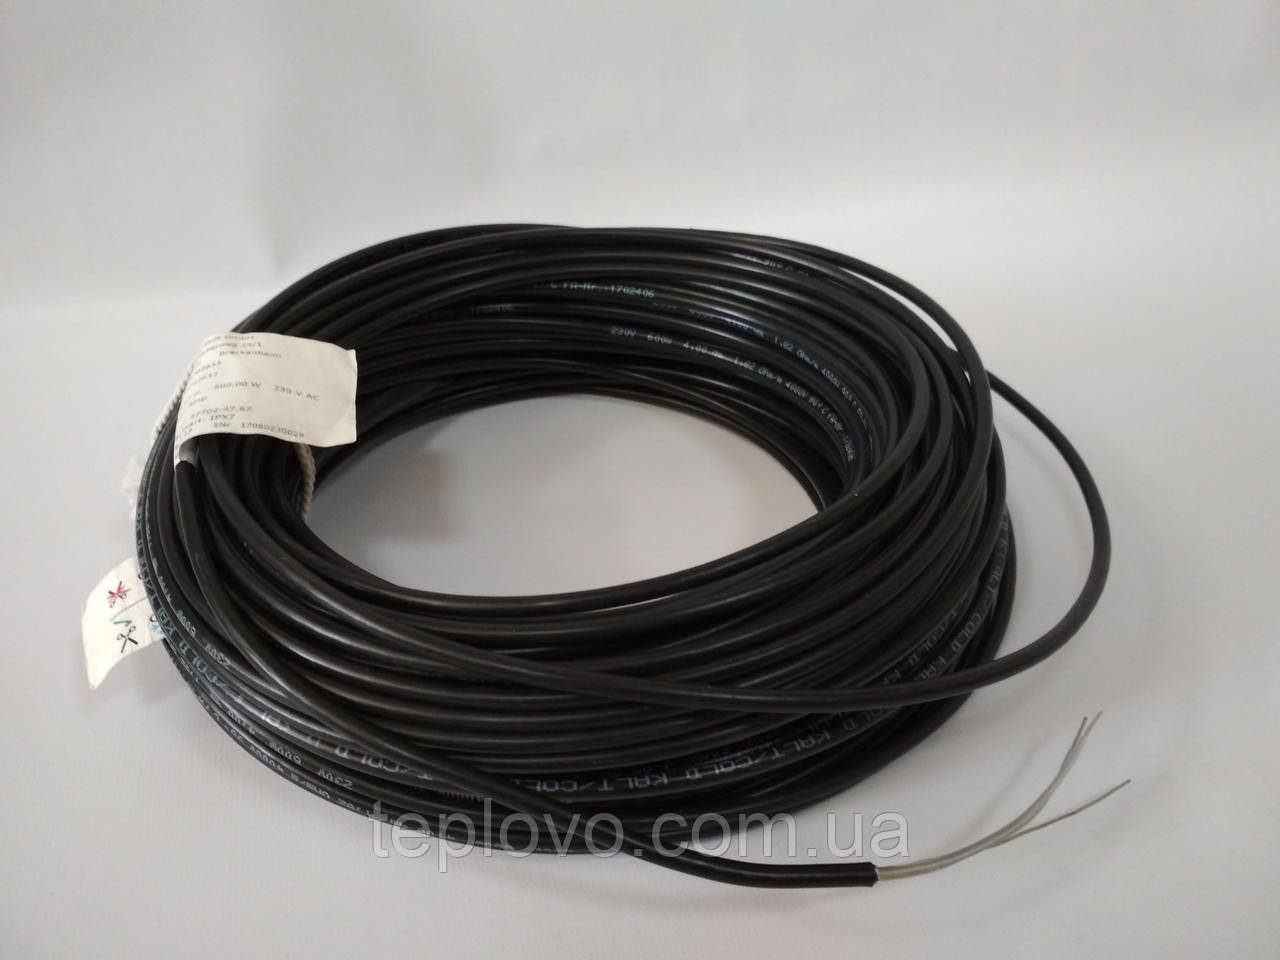 Двужильный нагревательный кабель Hemstedt BR-IM 17, 500 Вт (2.3 - 3.9 м2), теплый пол